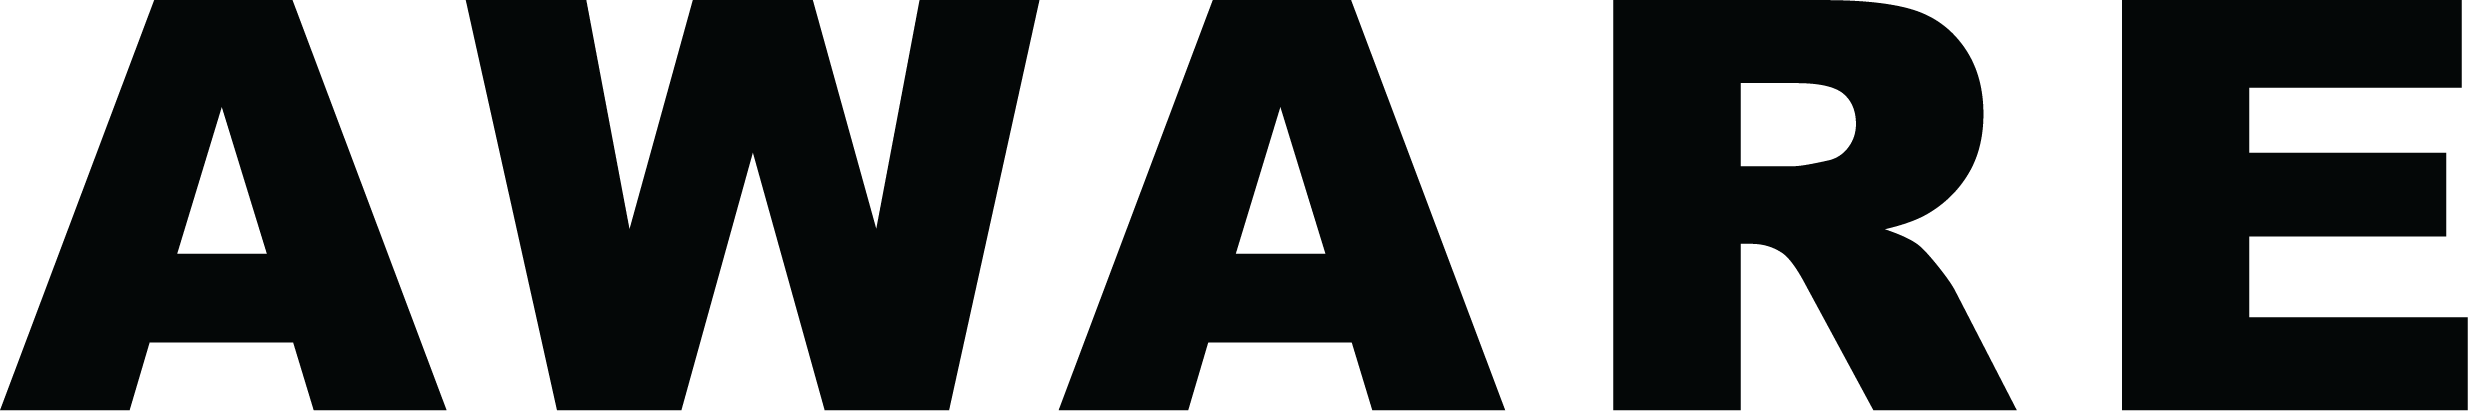 aware.tekst.logo.black